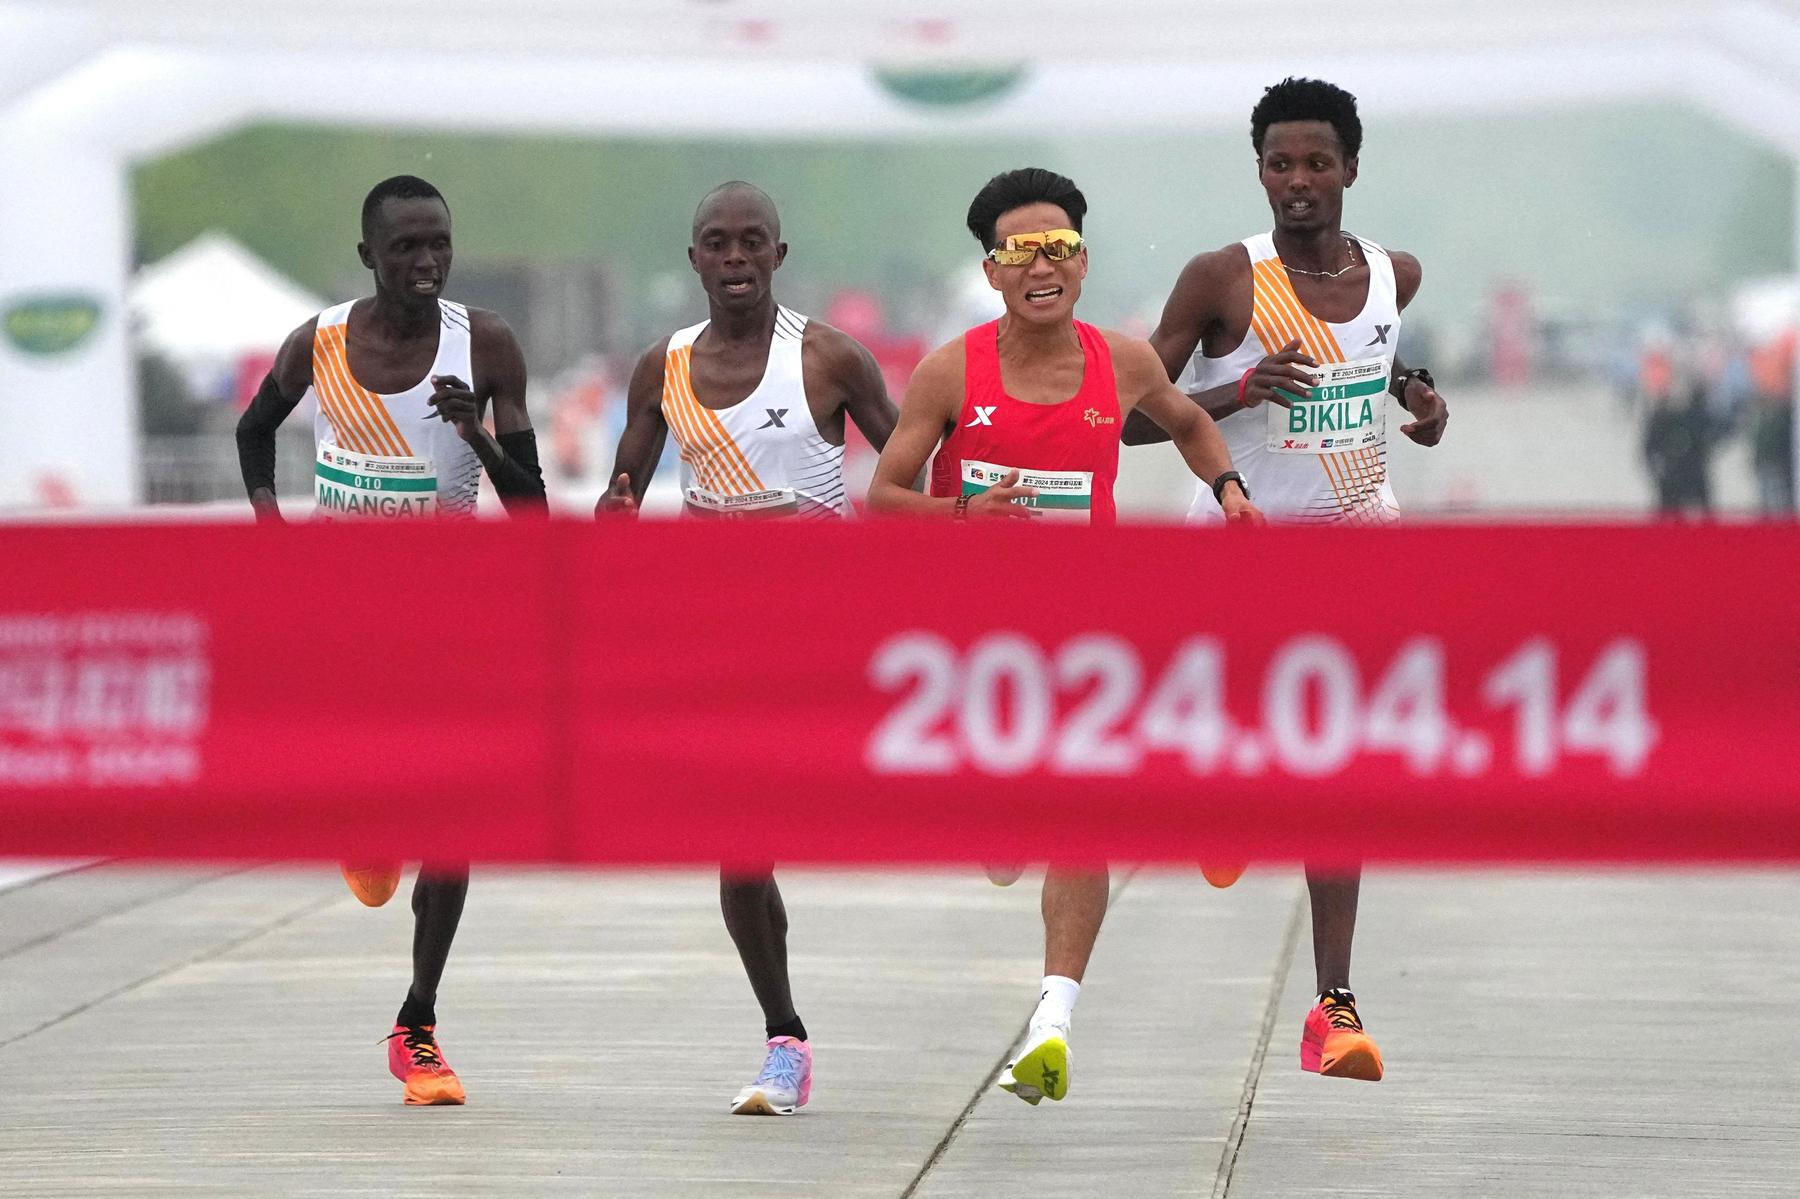 sieg aberkannt: trio aus afrika lässt chinesischen läufer bei peking-halbmarathon gewinnen